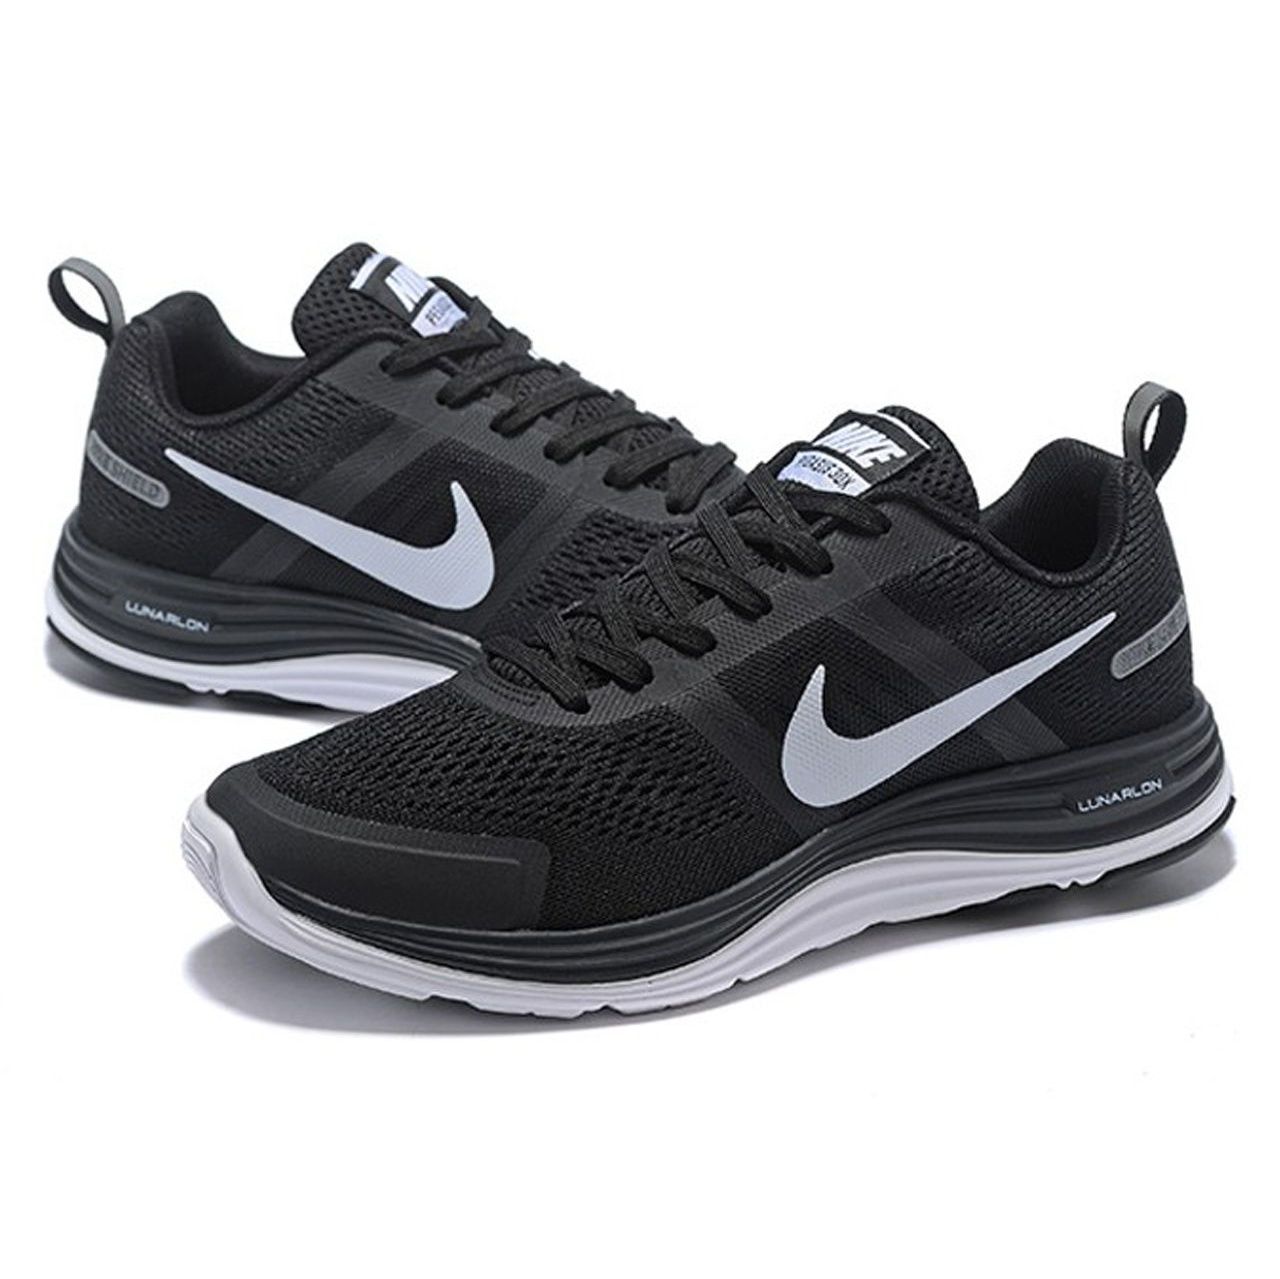  کفش ورزشی مردانه مخصوص دویدن و پیاده روی نایک مدل LUNARLON کد 803268001